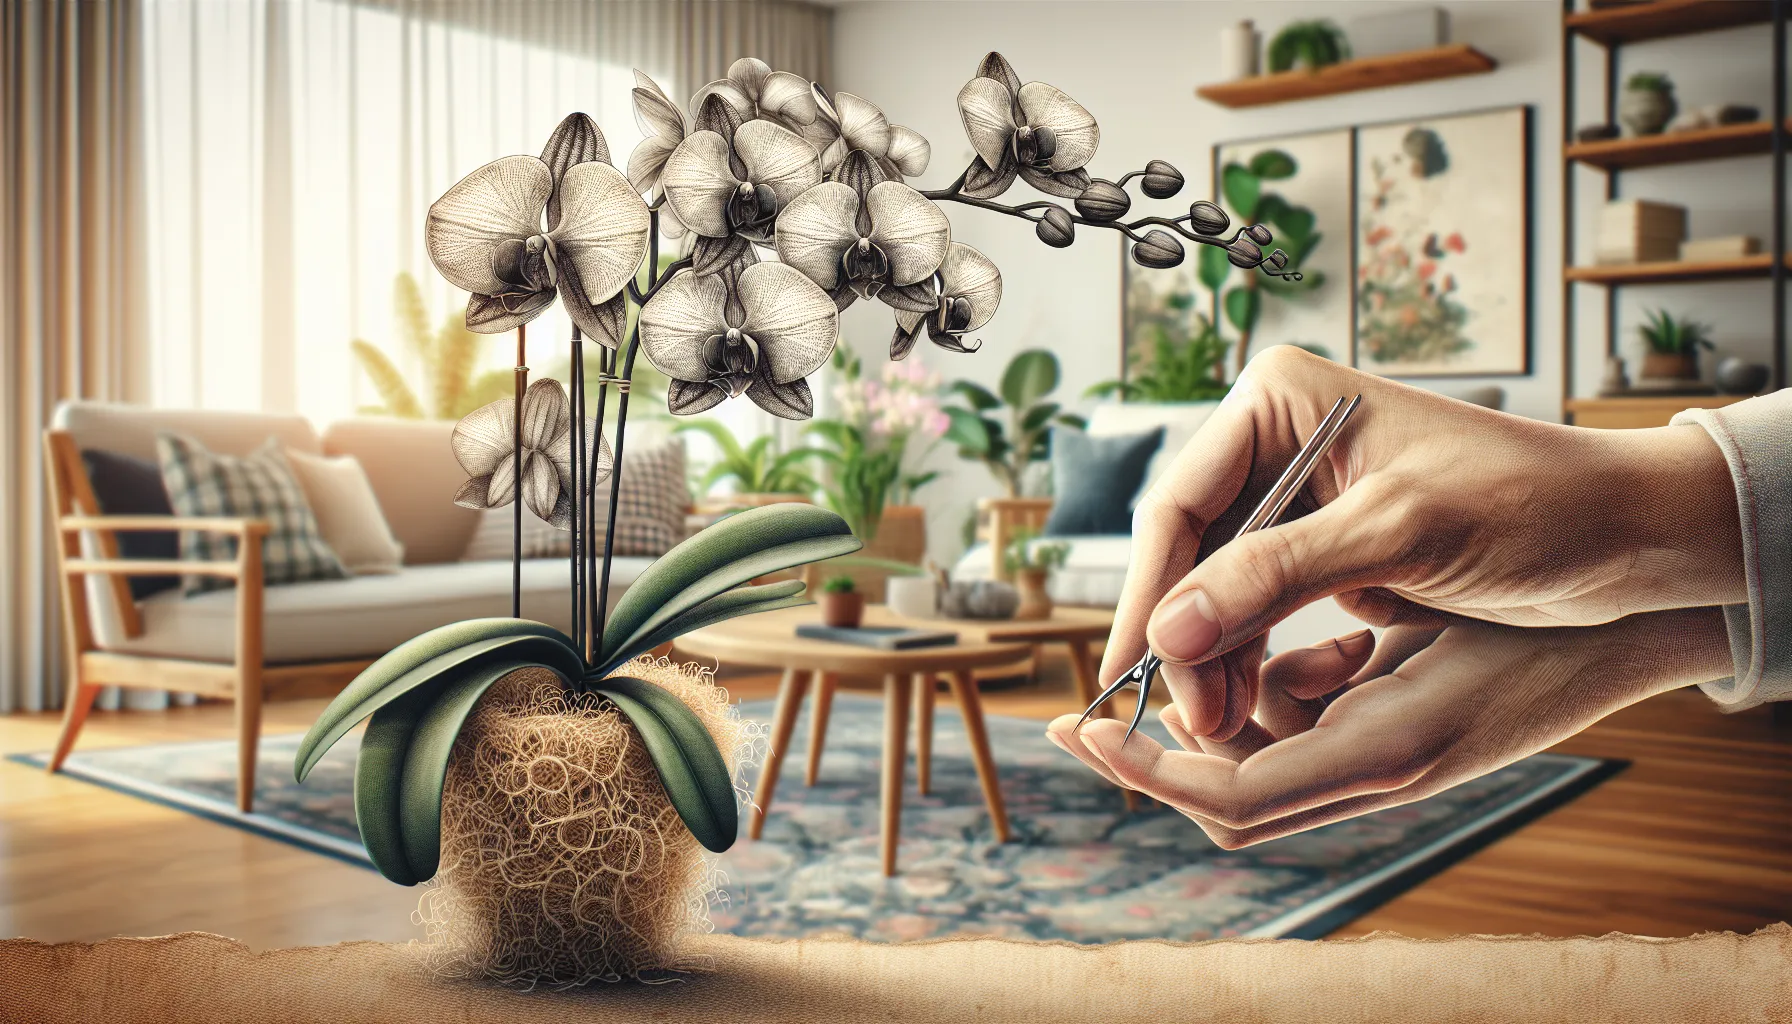 Imagen de una mano podando una orquídea cuidadosamente en un entorno Doméstico.